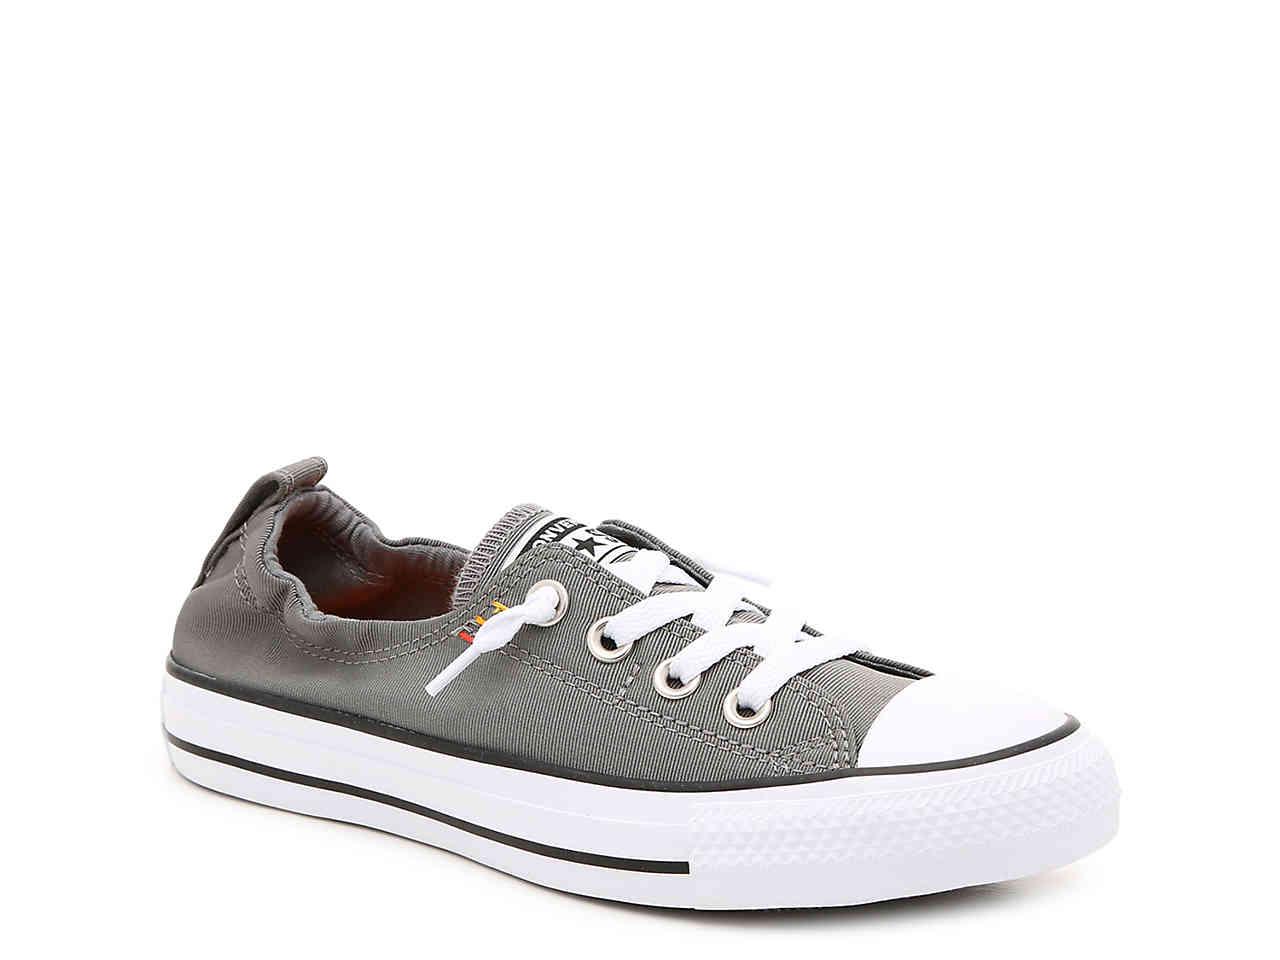 grey slip on converse